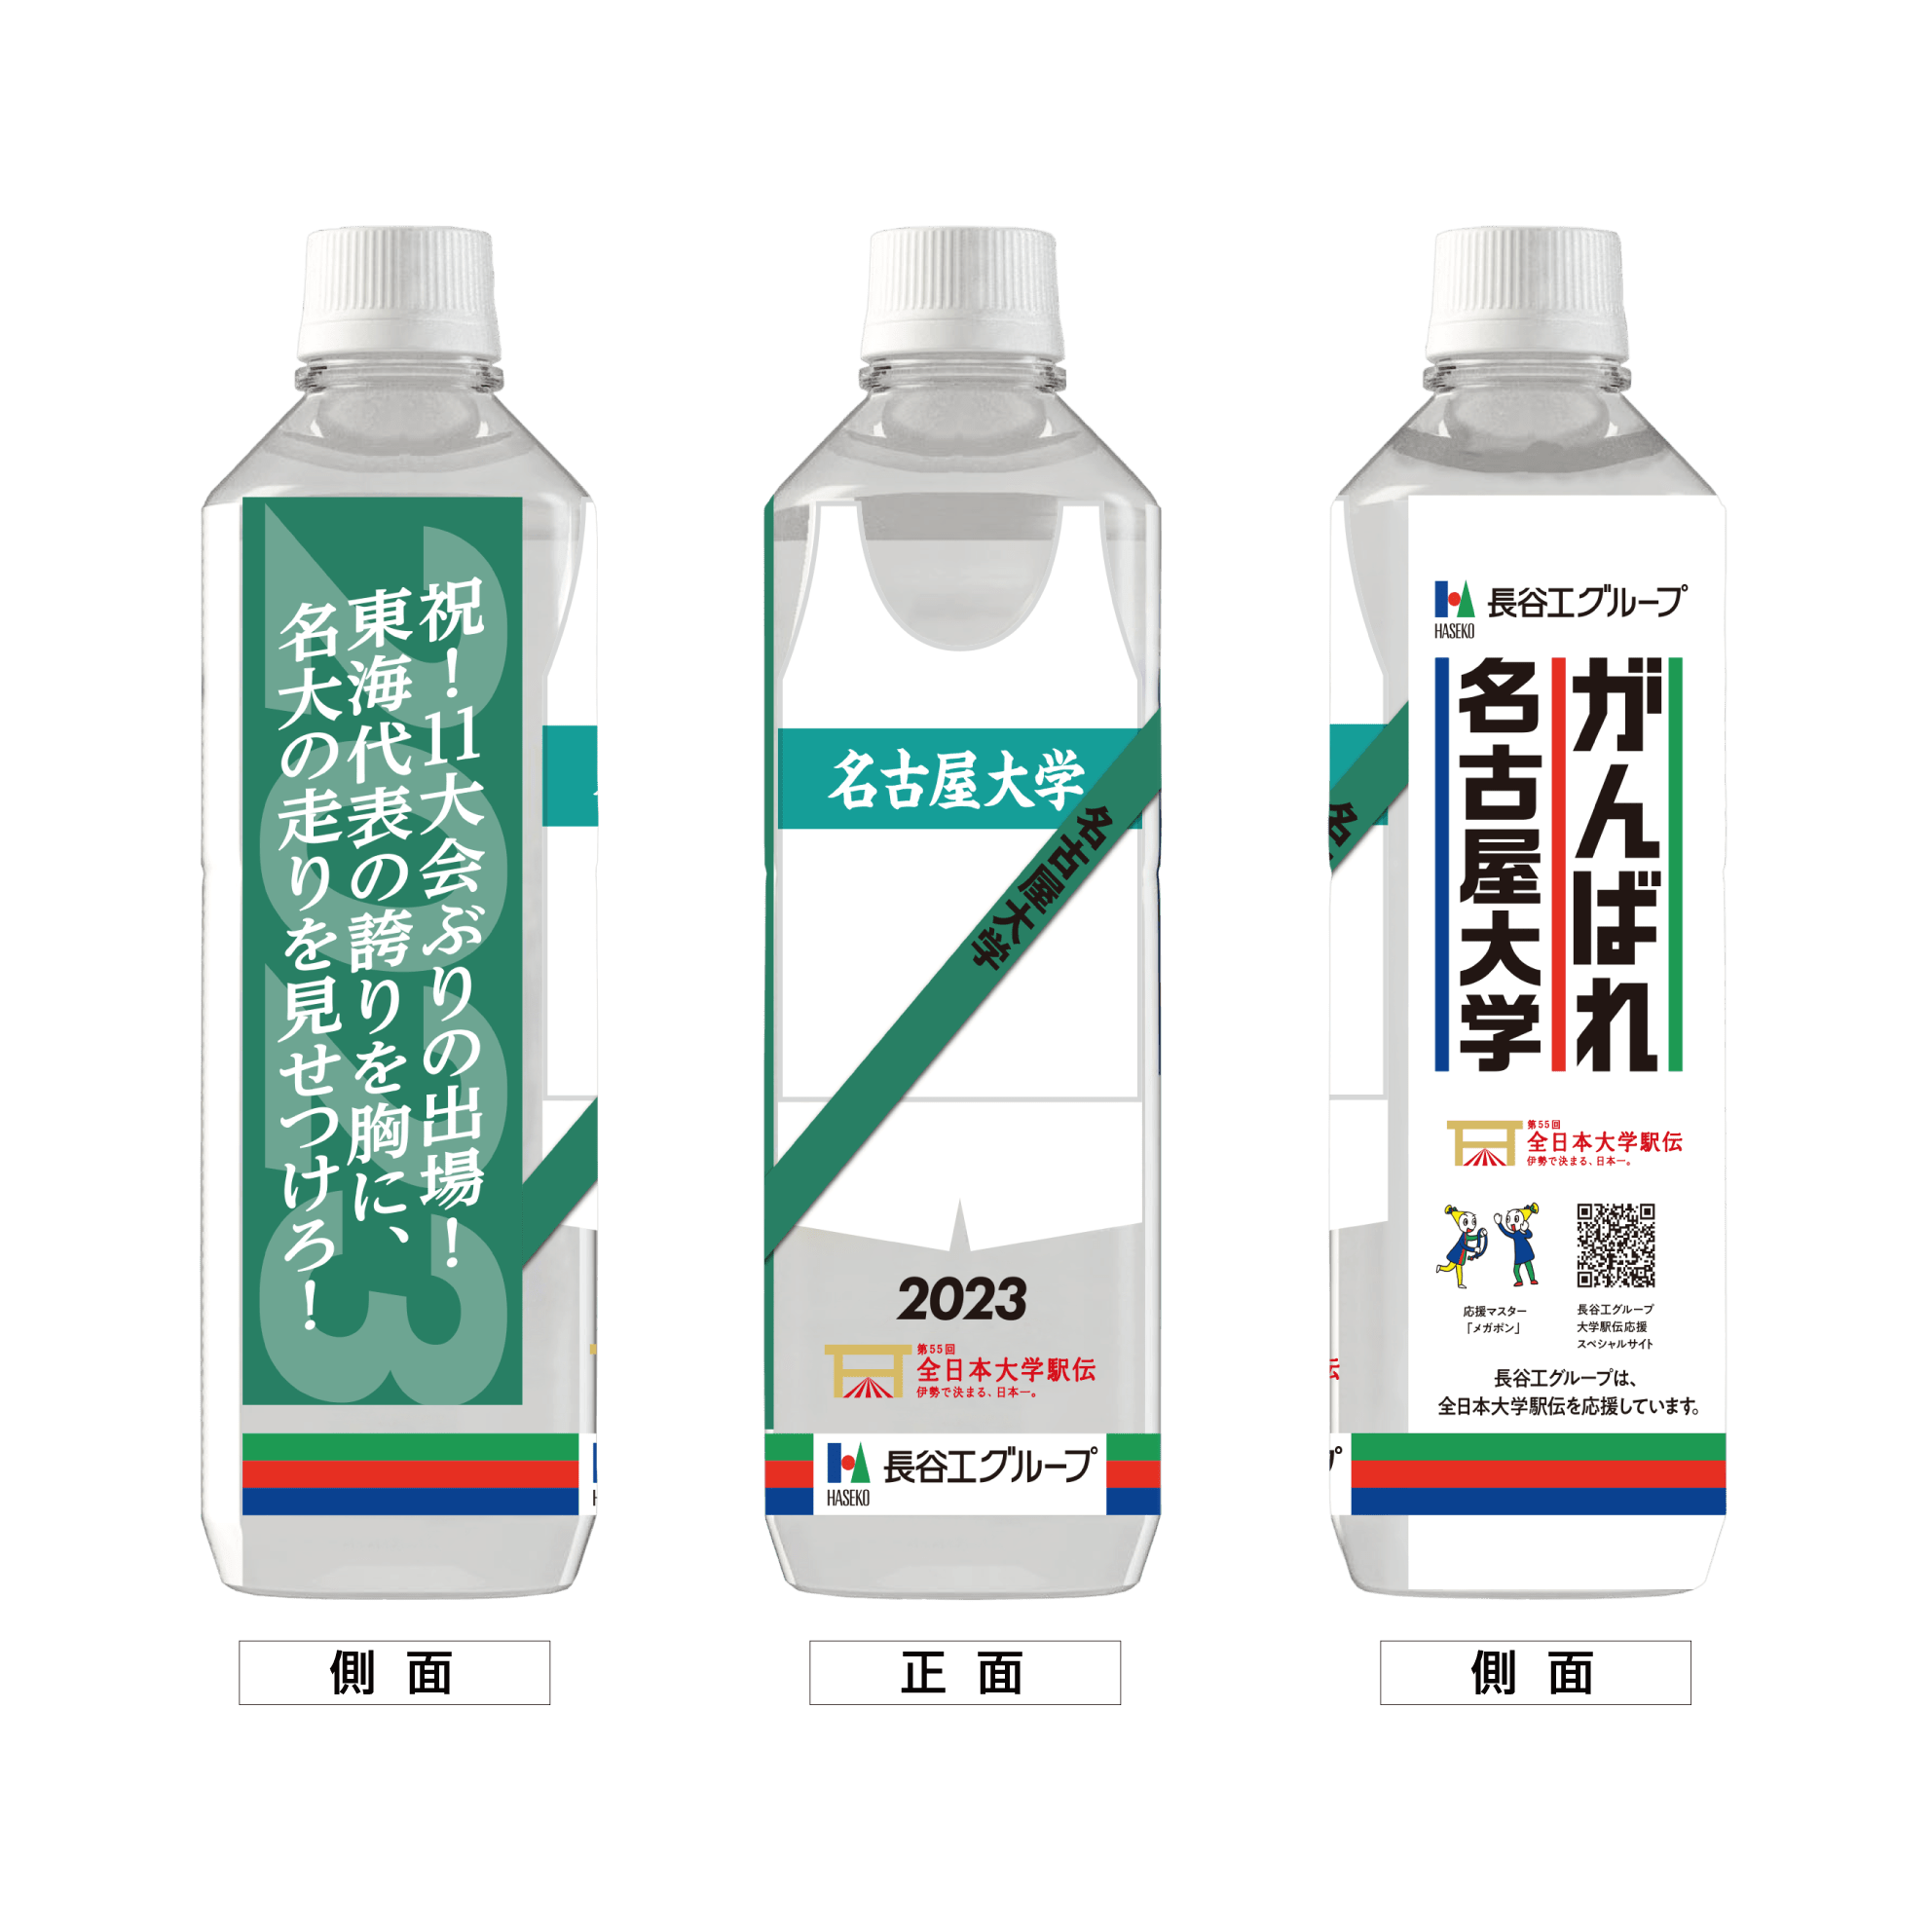 名古屋大学 ボトルデザイン